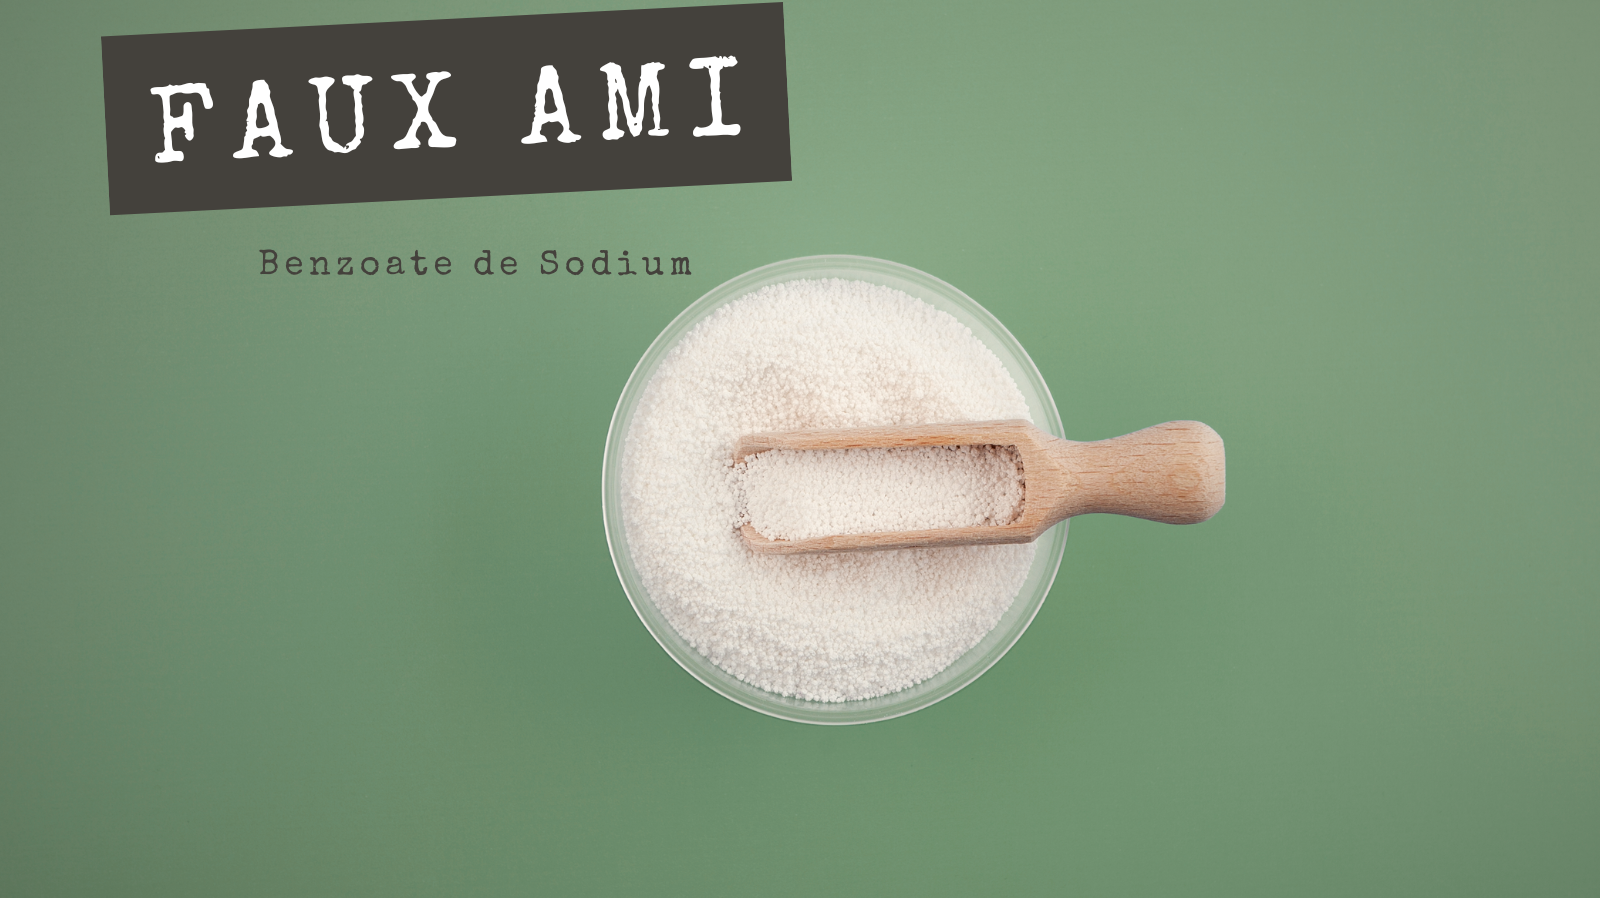 FAUX AMIS - Benzoate de Sodium